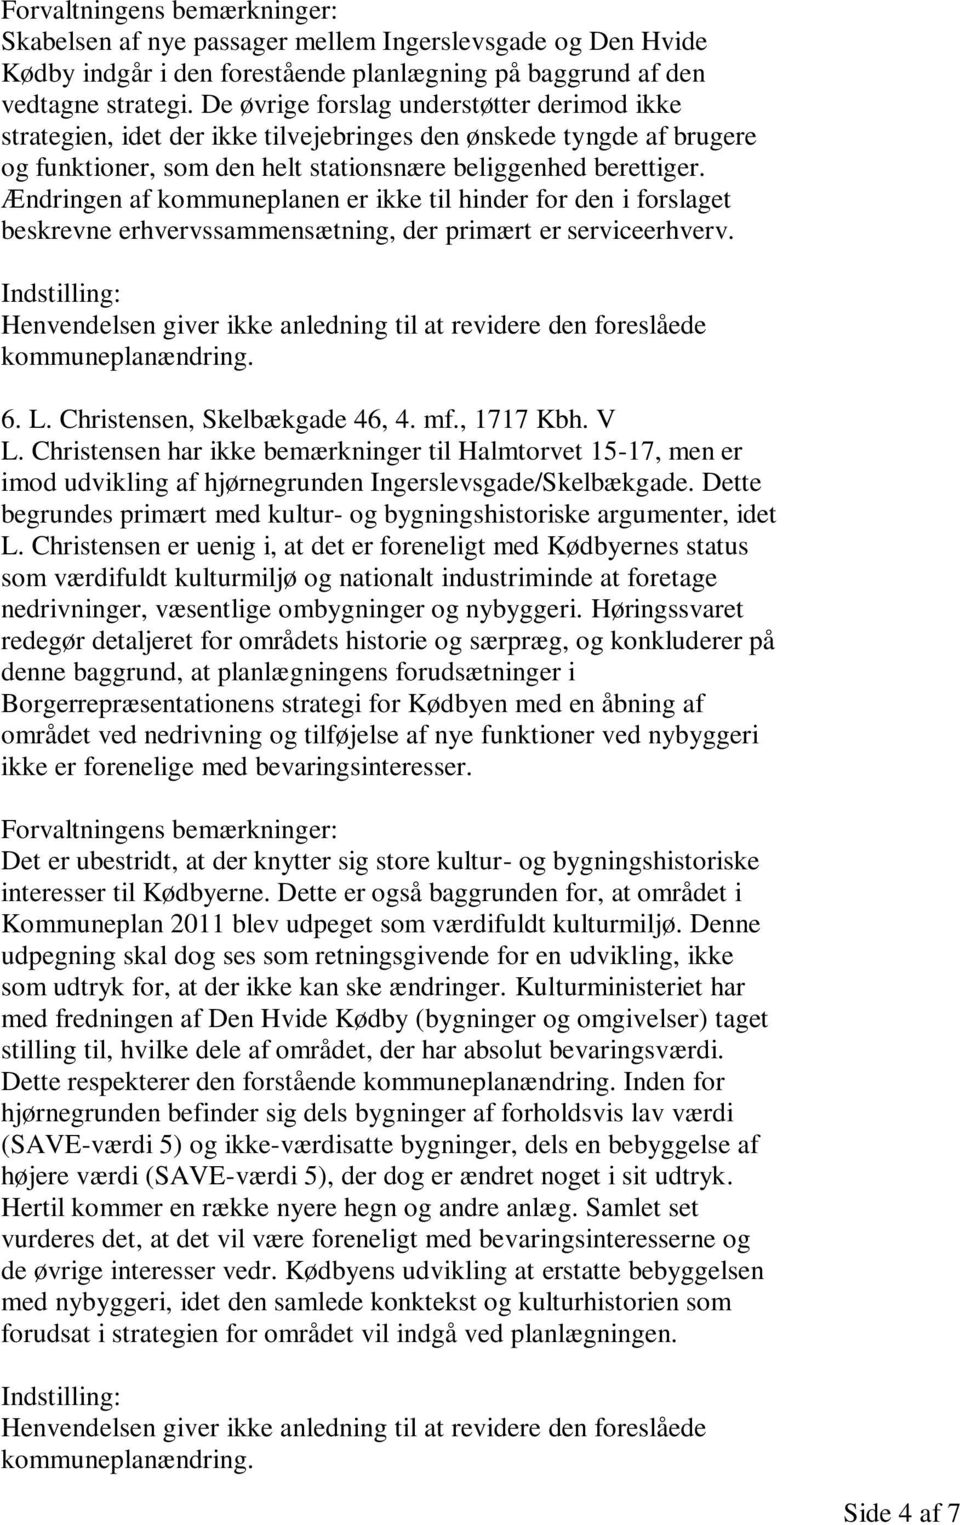 Ændringen af kommuneplanen er ikke til hinder for den i forslaget beskrevne erhvervssammensætning, der primært er serviceerhverv. 6. L. Christensen, Skelbækgade 46, 4. mf., 1717 Kbh. V L.